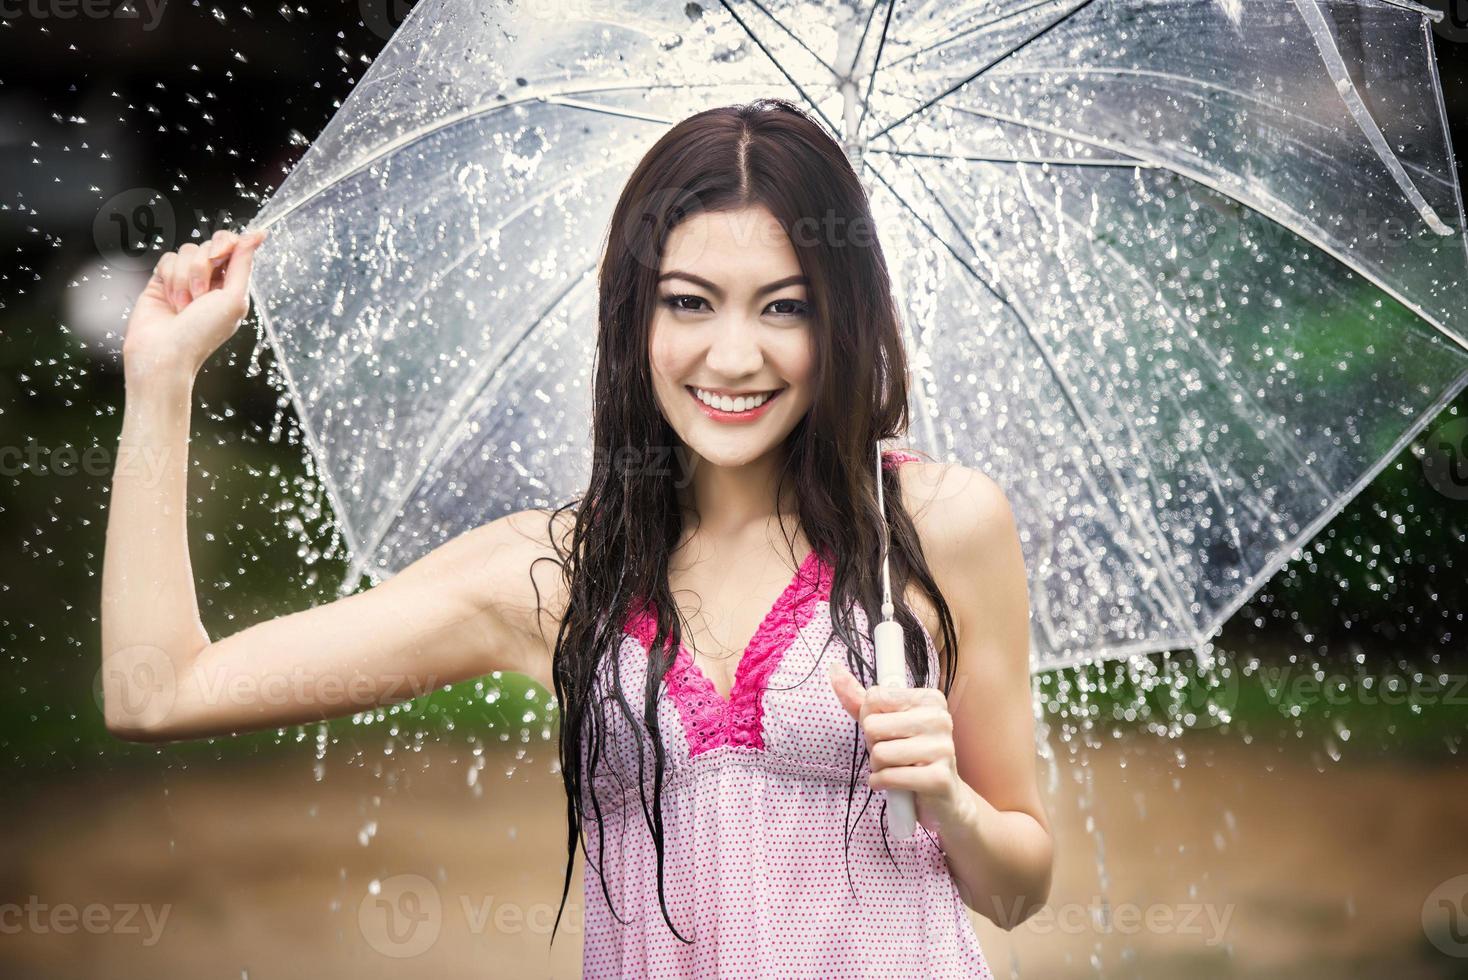 bellissimo ragazza nel il pioggia con trasparente ombrello foto